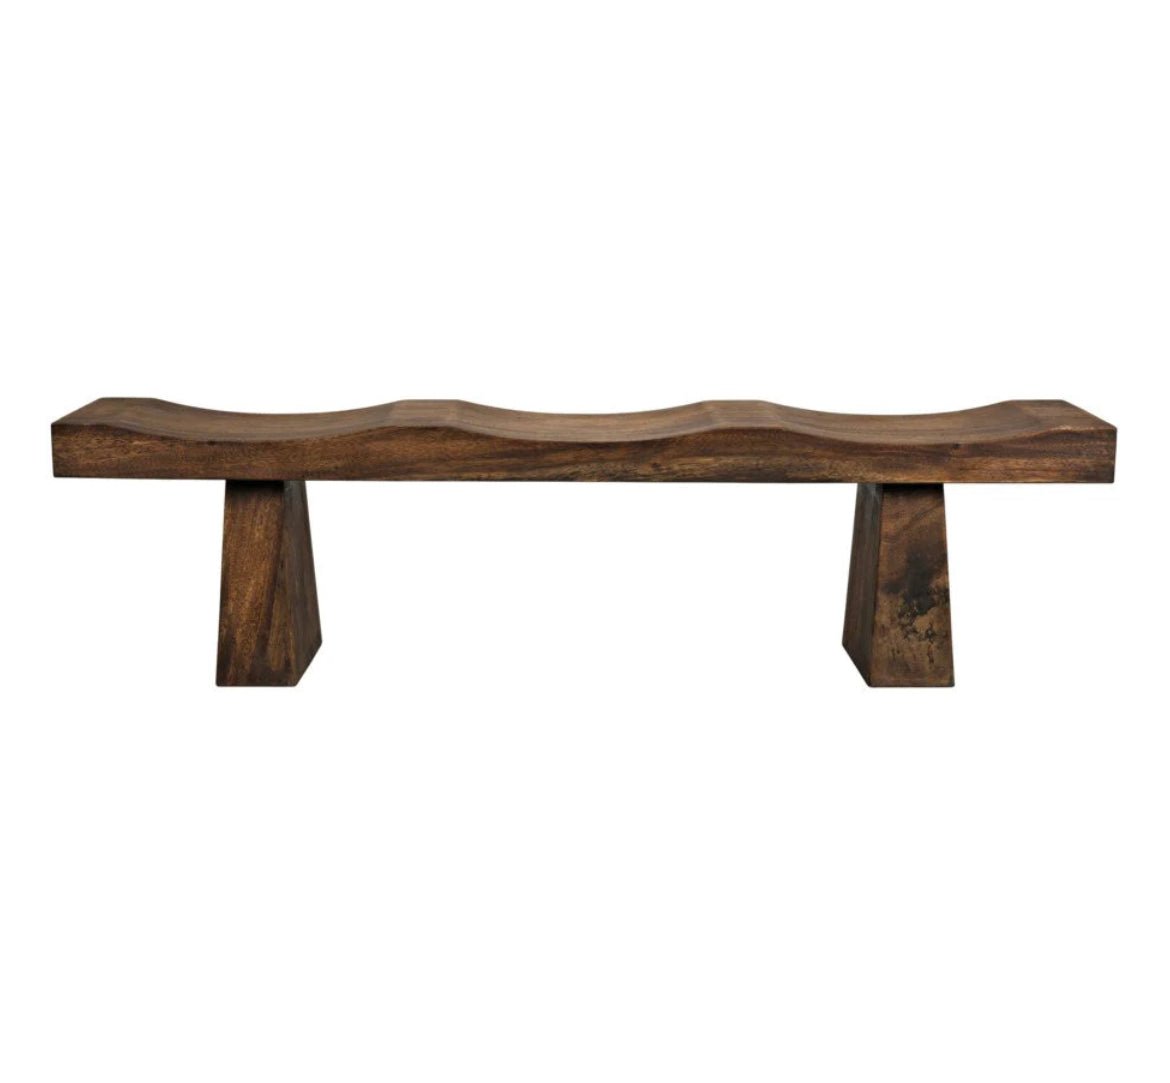 ‘Shibumi’ Bench (Munggur Wood) - EcoLuxe Furnishings